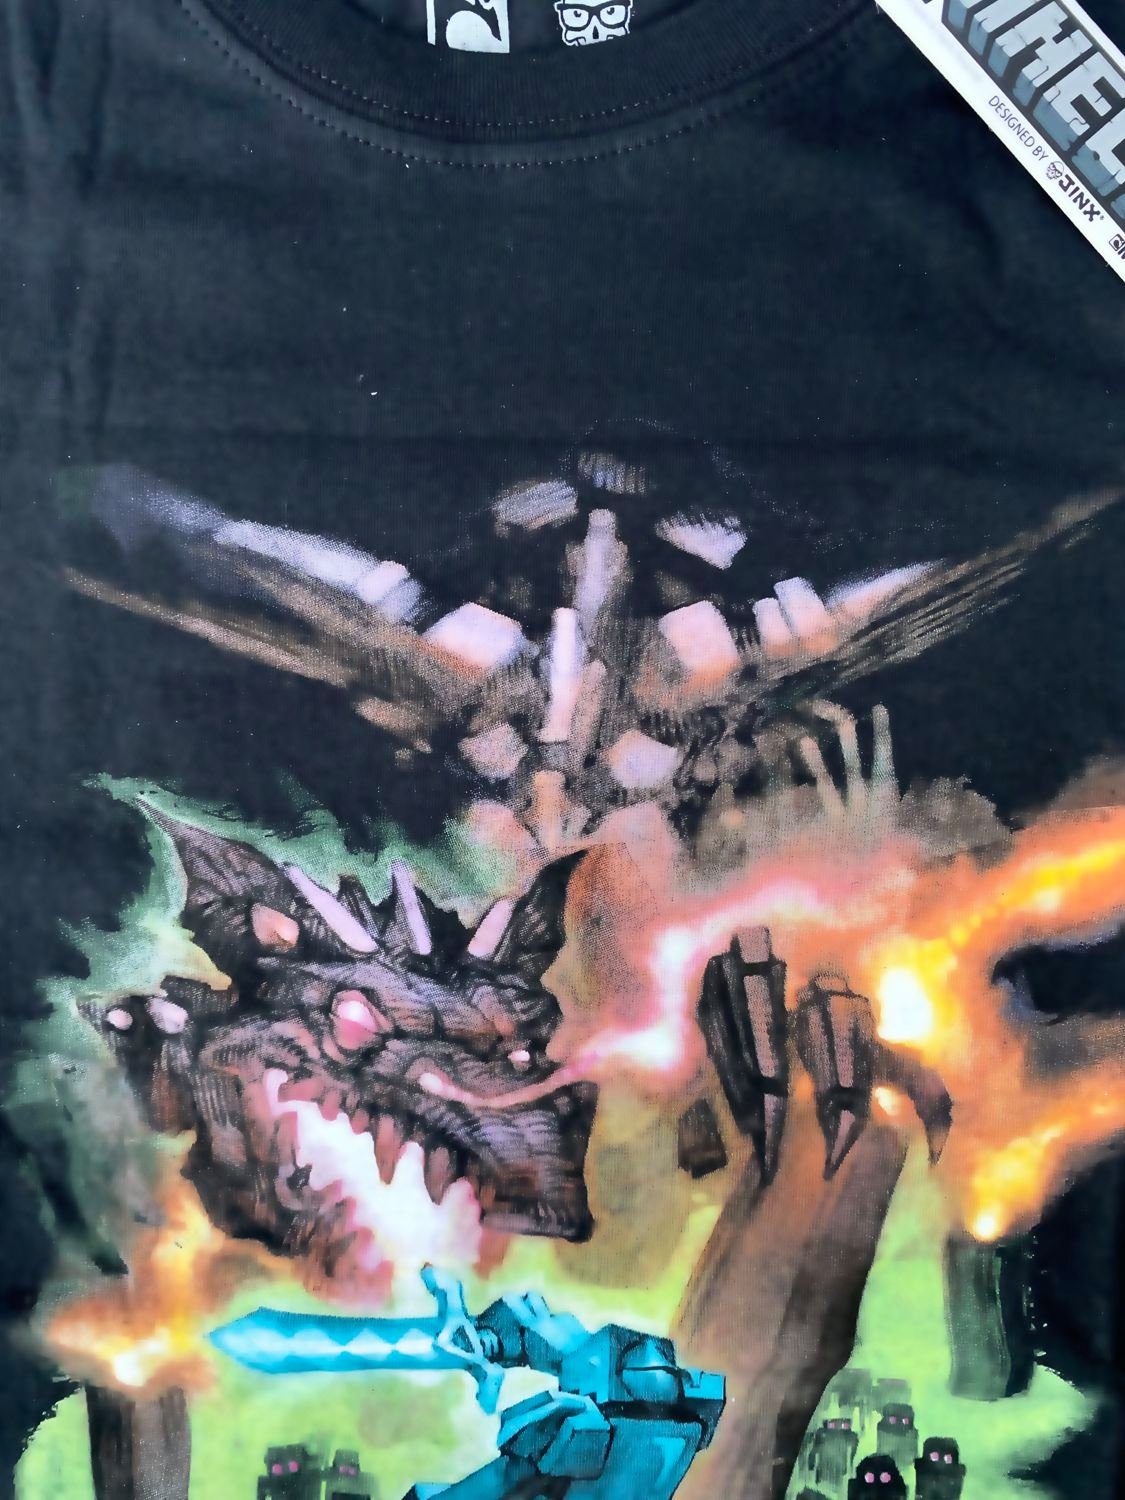 Bekleidung T-Shirts Minecraft Print-Shirt Minecraft T-Shirt Ender Dragon Schwarz Große Jungen Gr. S M L Jugendliche + Erwachsene